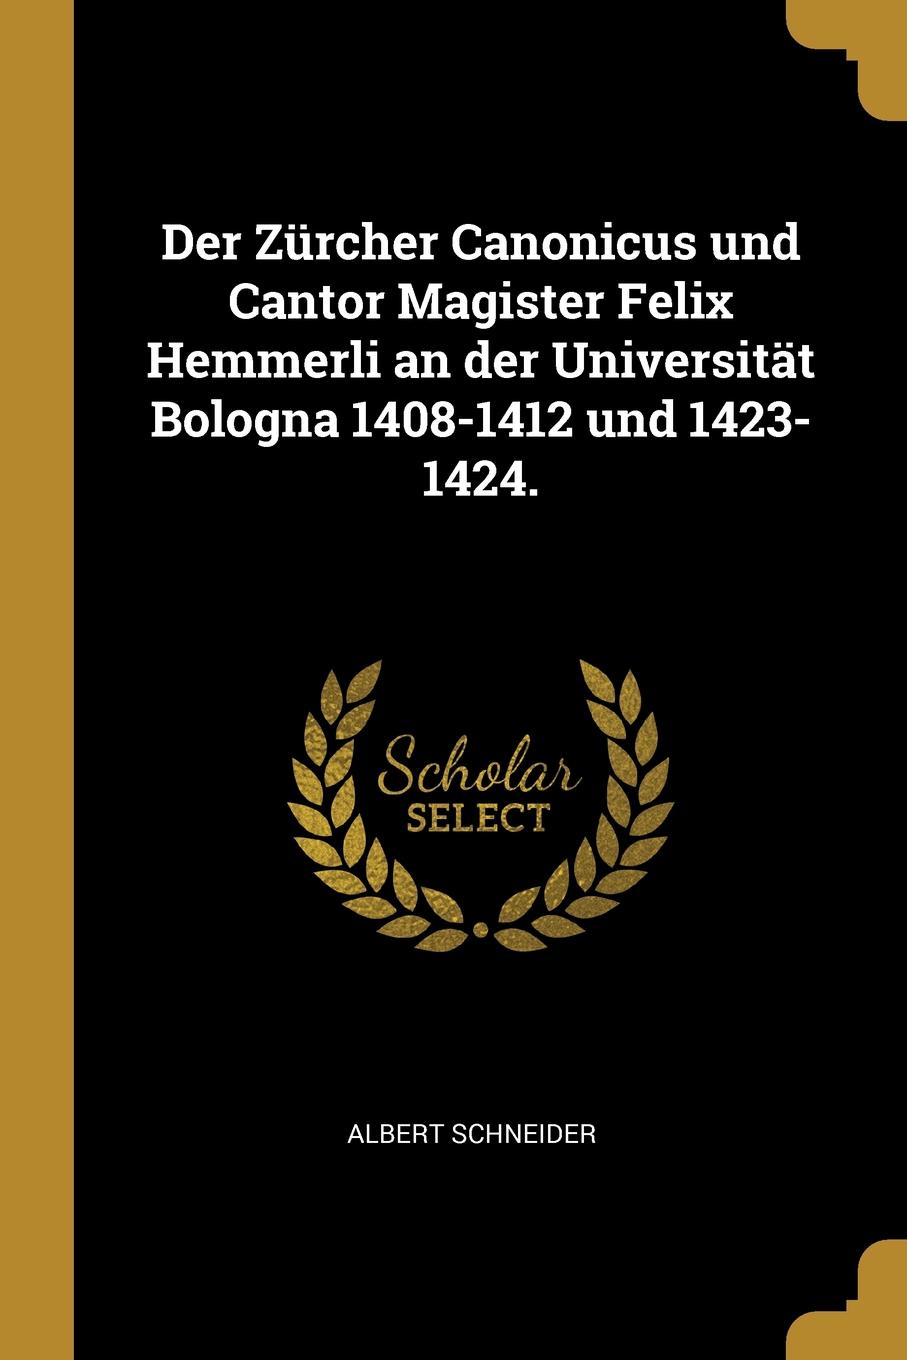 Der Zurcher Canonicus und Cantor Magister Felix Hemmerli an der Universitat Bologna 1408-1412 und 1423-1424.